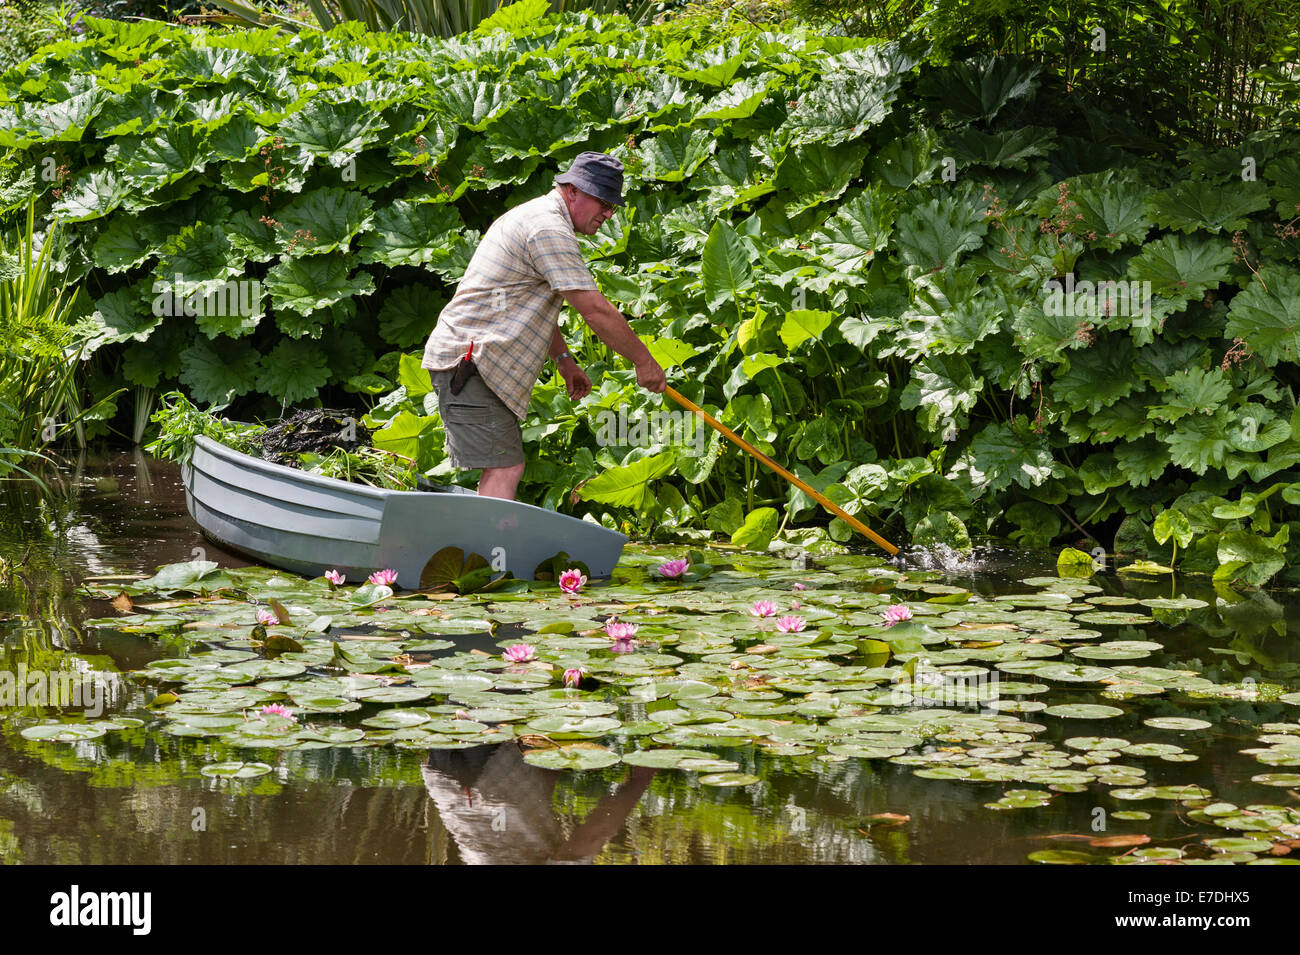 Die Beth Chatto Gardens, Colchester, Essex, England. Ein Gärtner bei der Arbeit Rechen Unkraut aus dem Teich Stockfoto